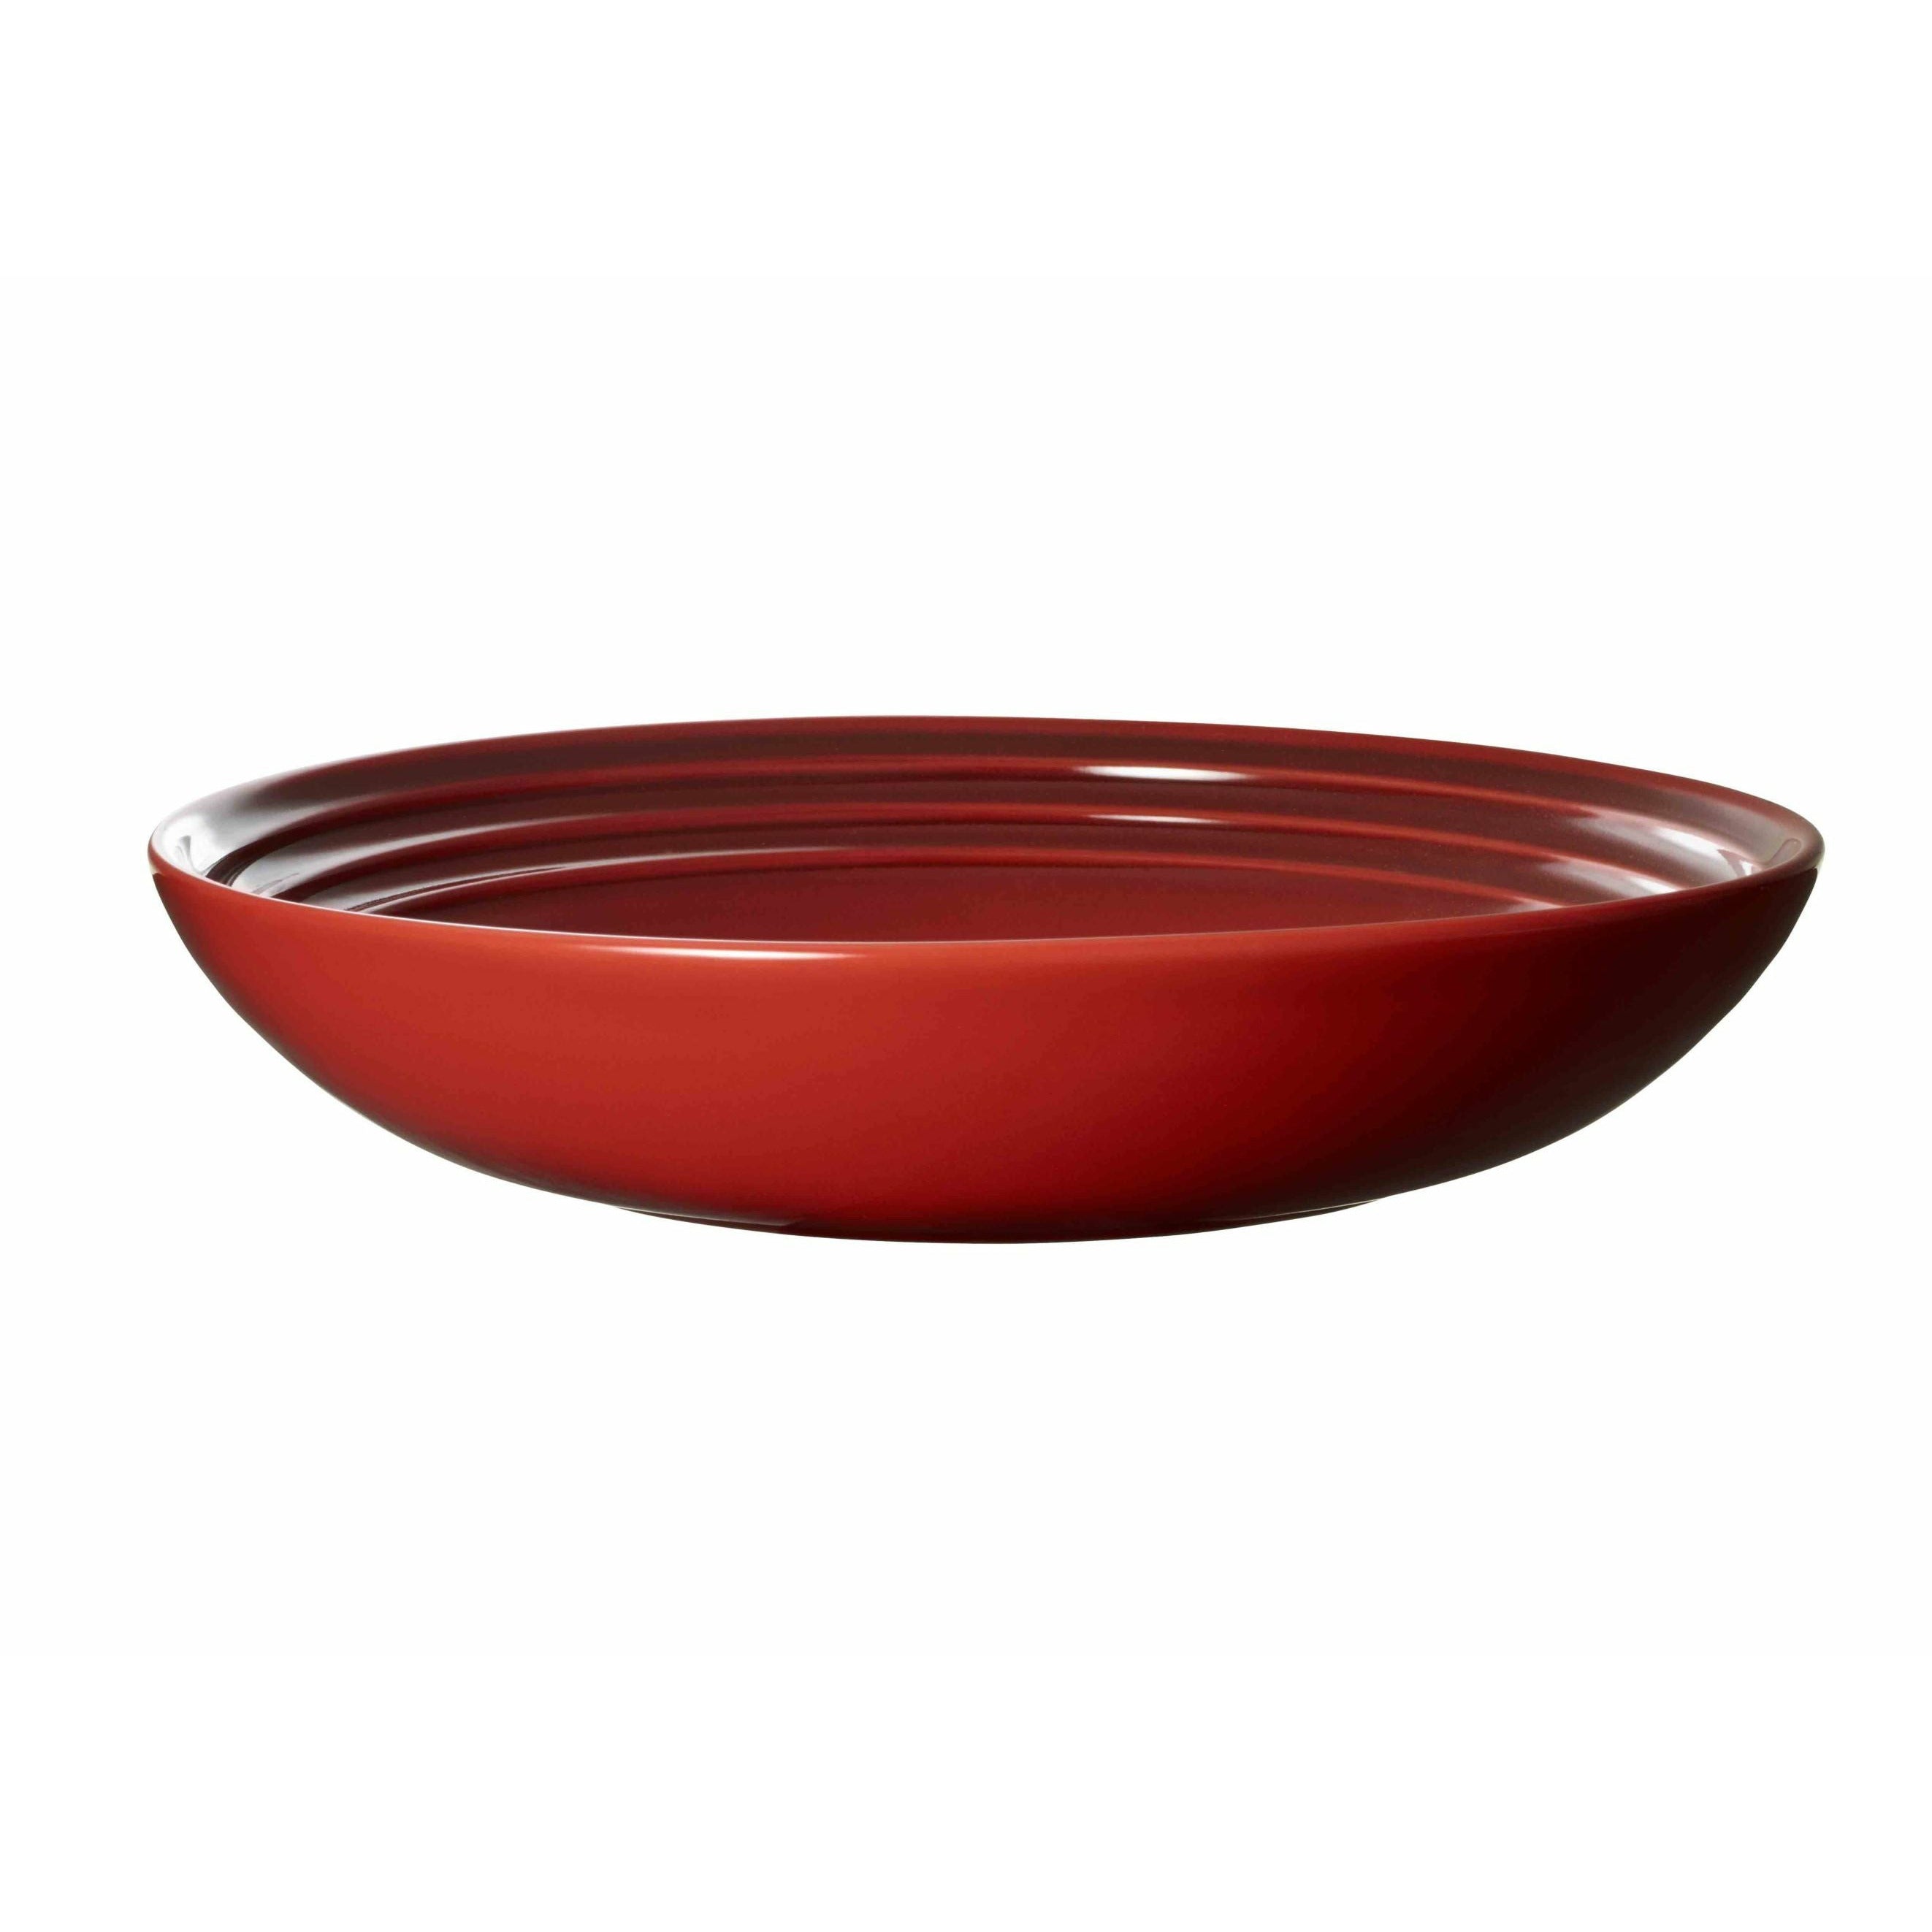 Deska polévky Le Creuset 22 cm, třešňová červená